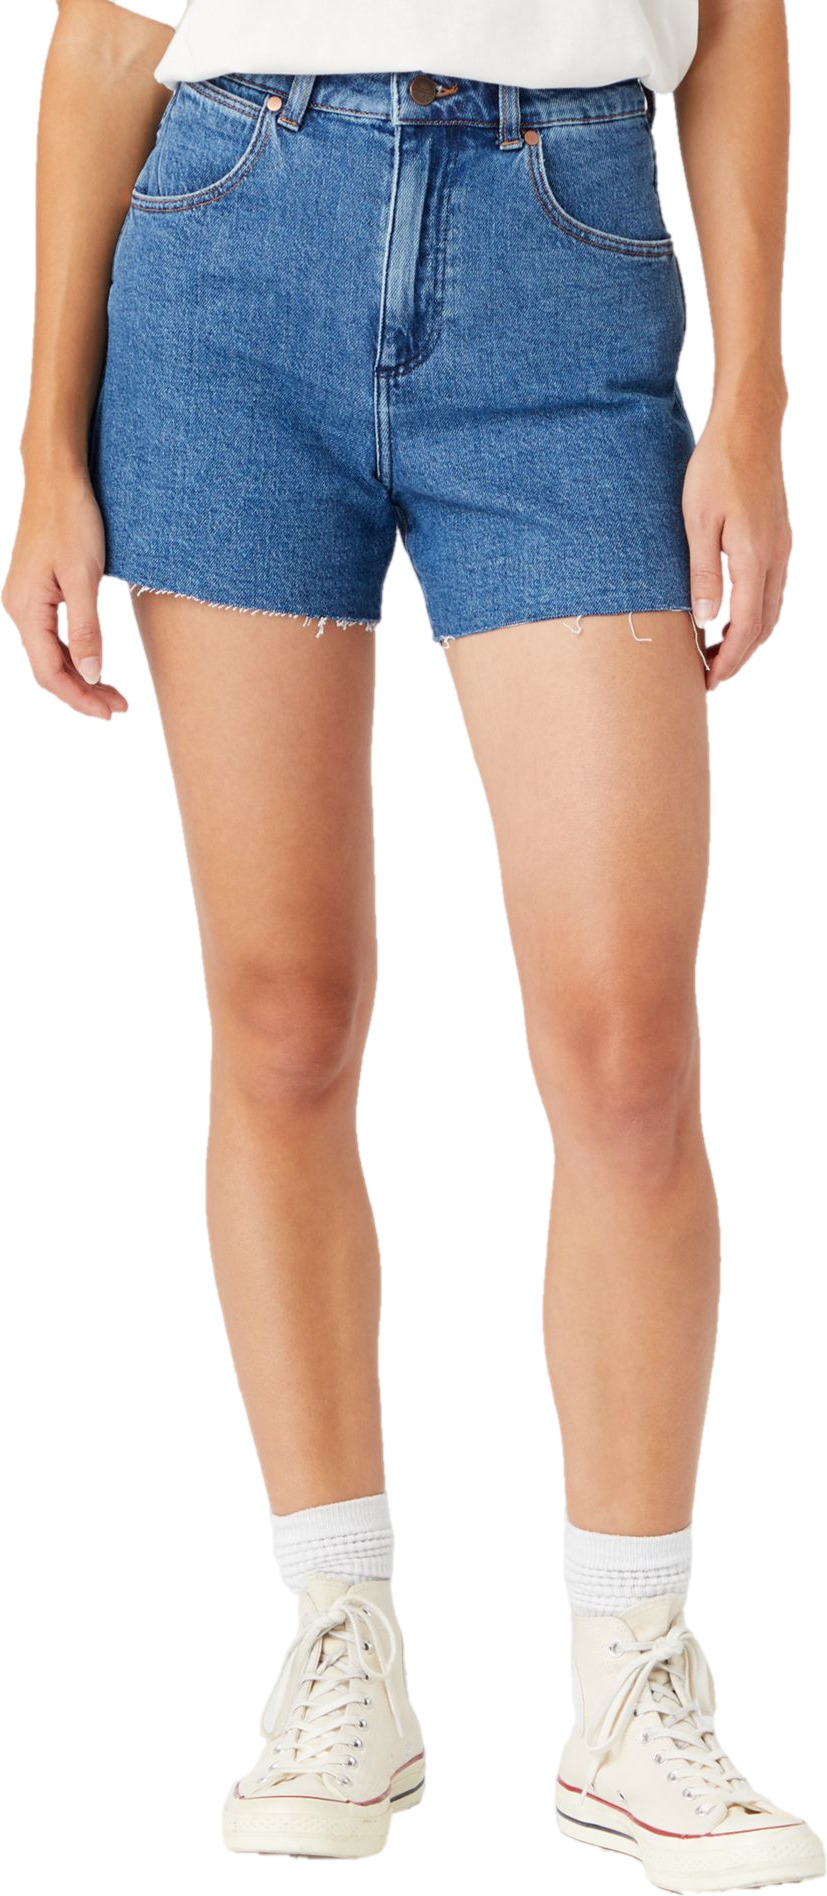 Джинсовые шорты женские Wrangler Women A-Line Short синие 42